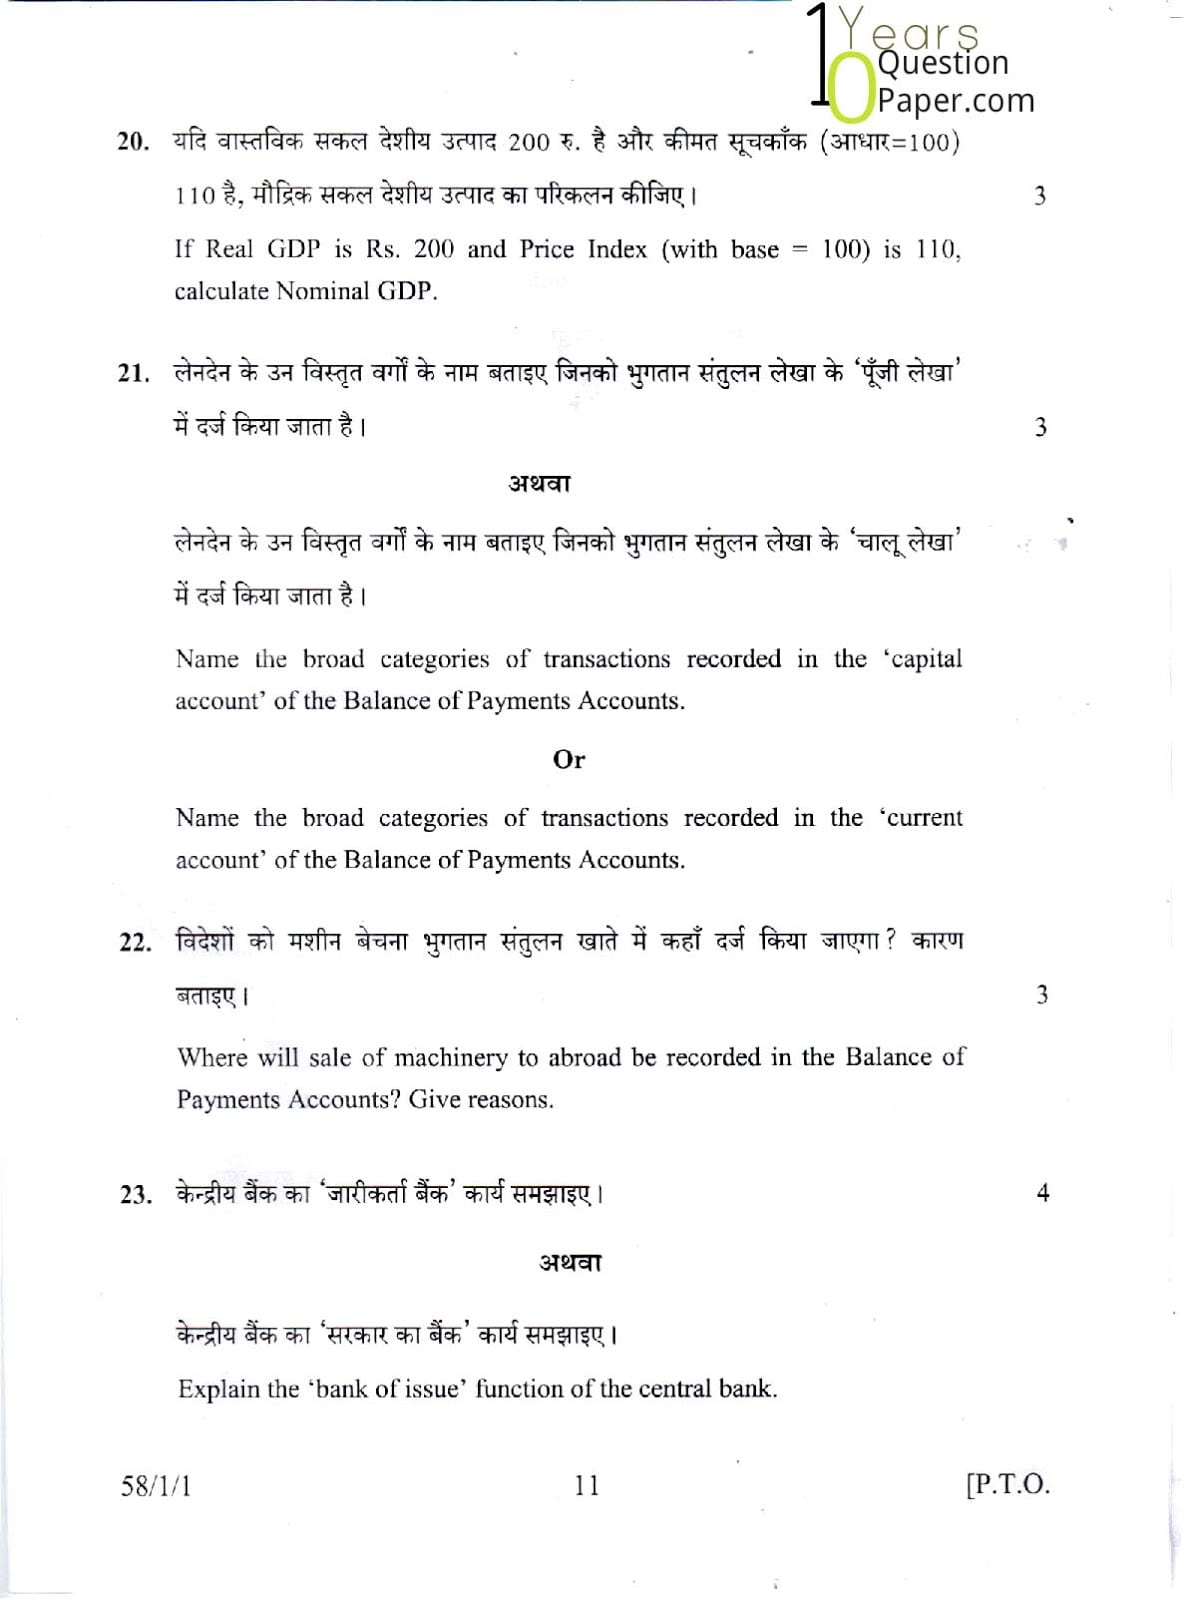 CBSE Class 12 Economics 2015 Question Paper